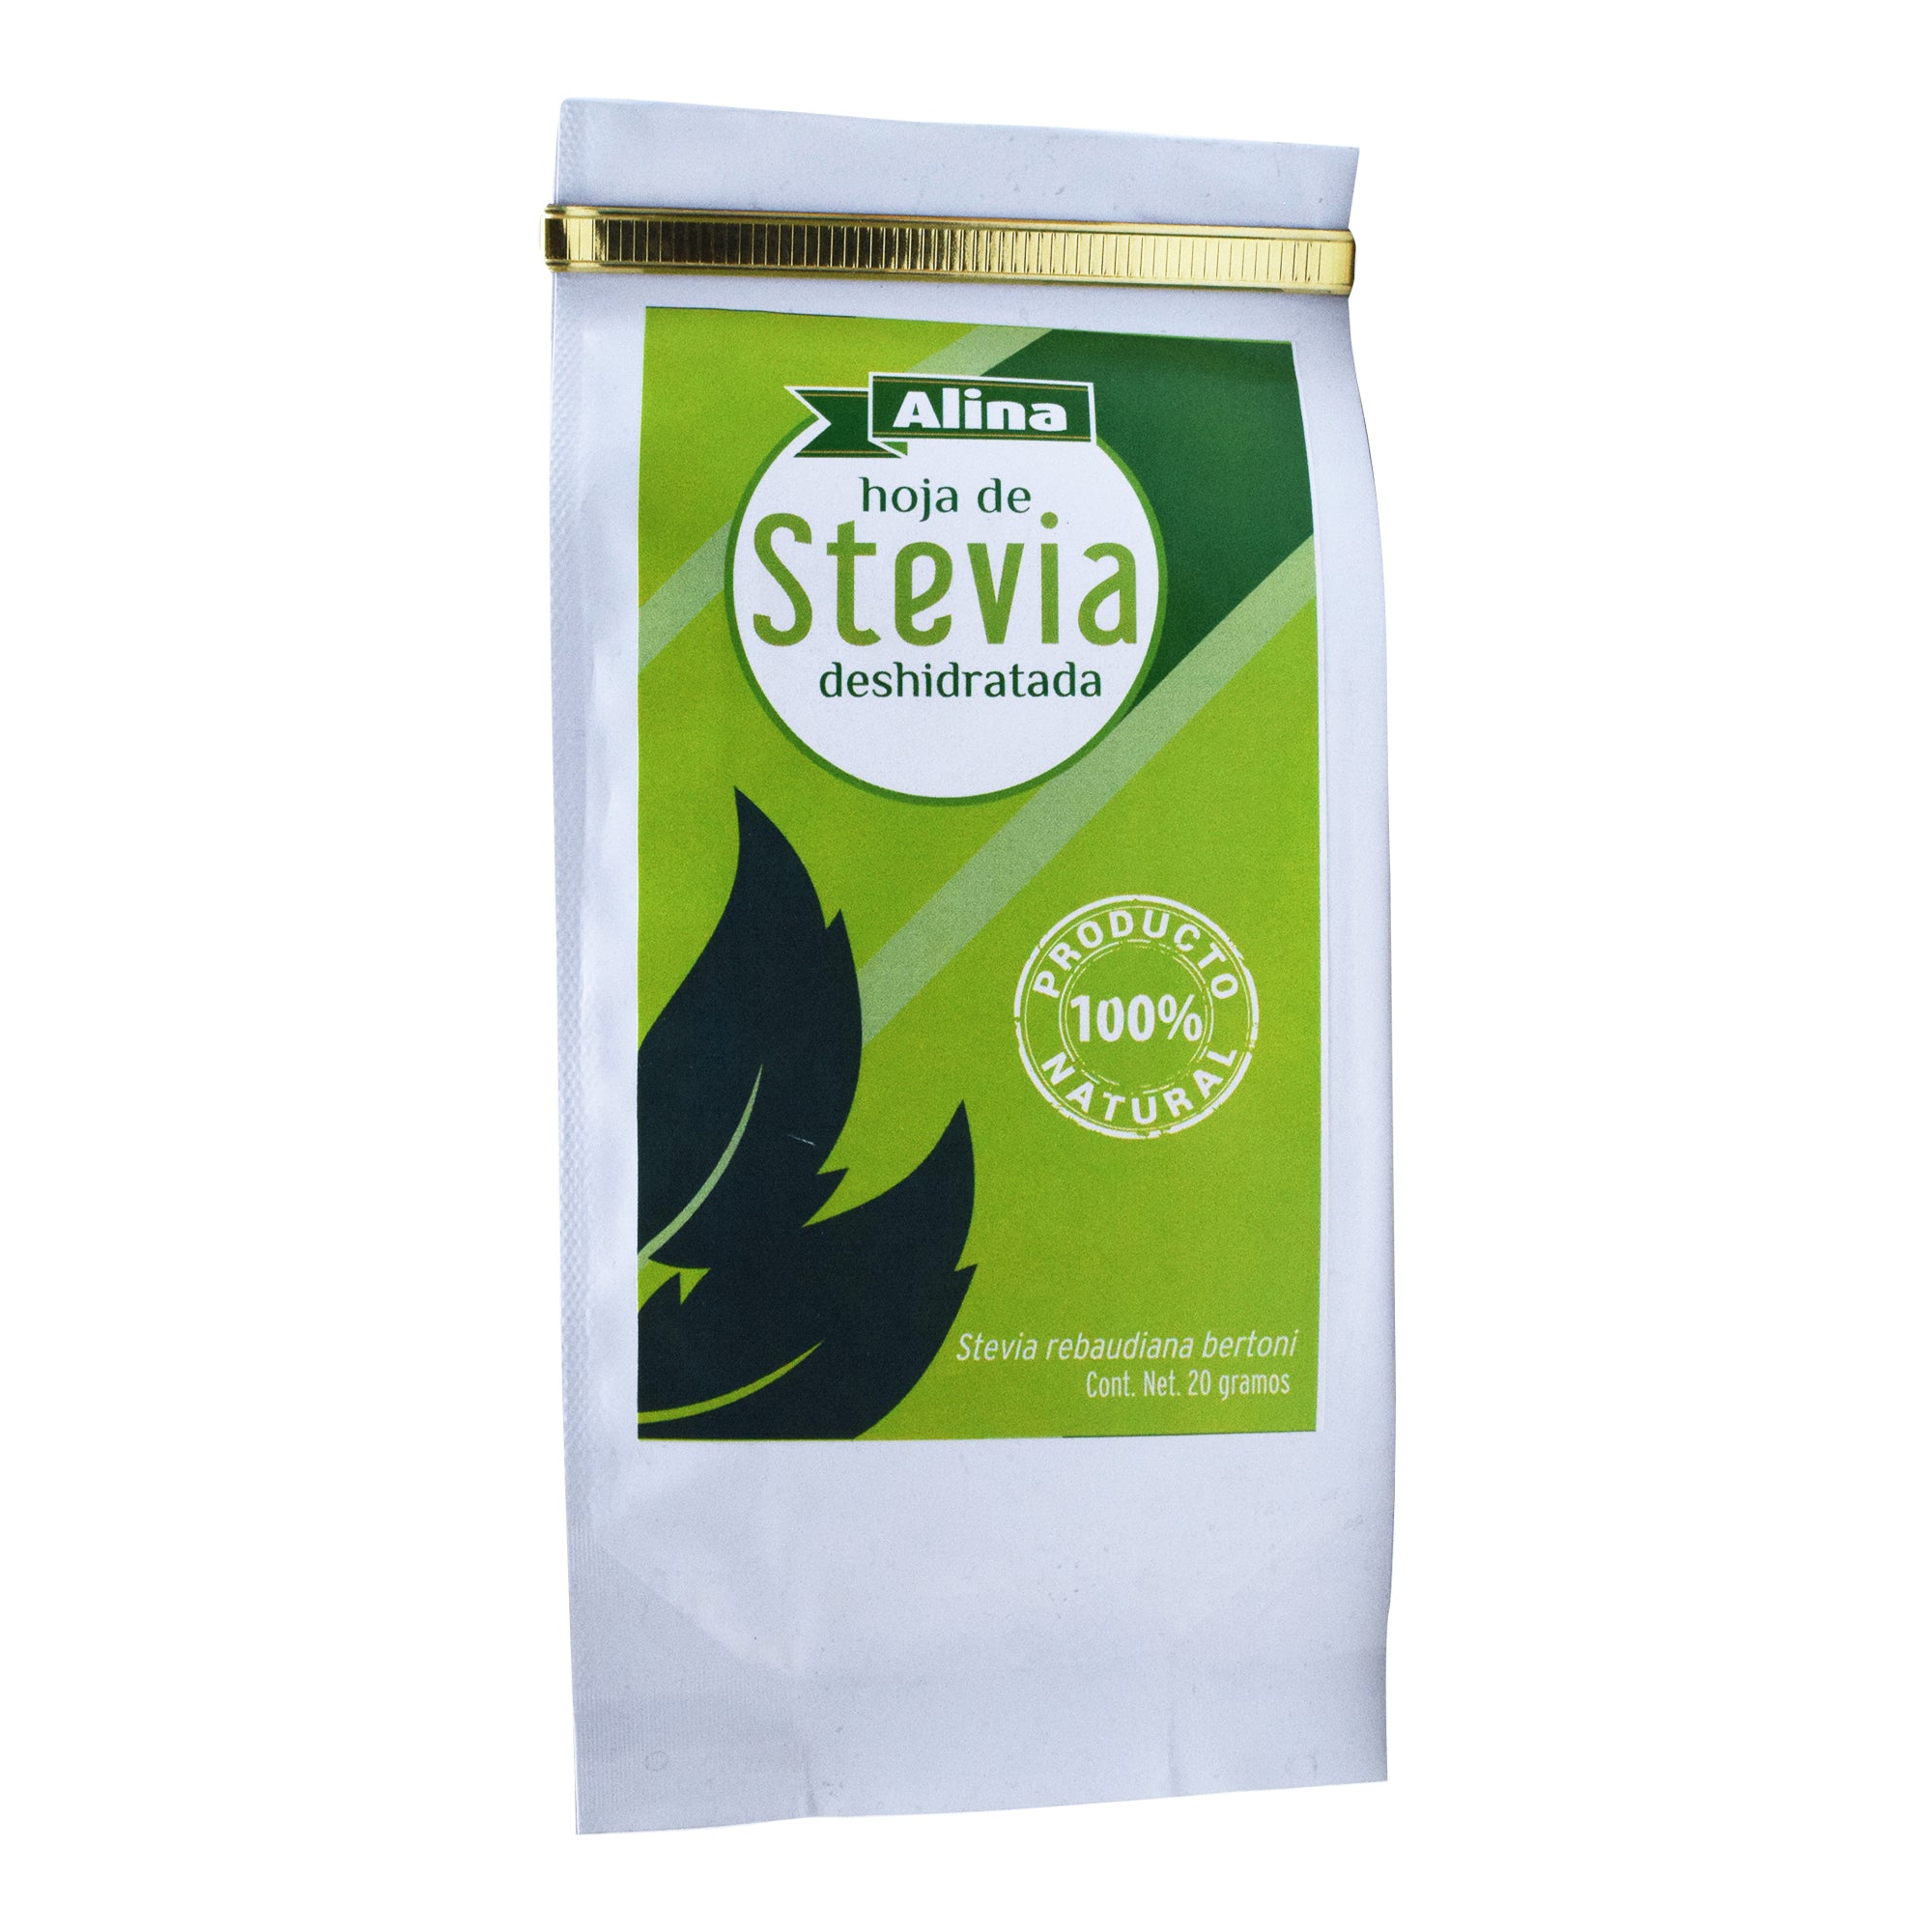 Hoja de stevia deshidratada 20 g